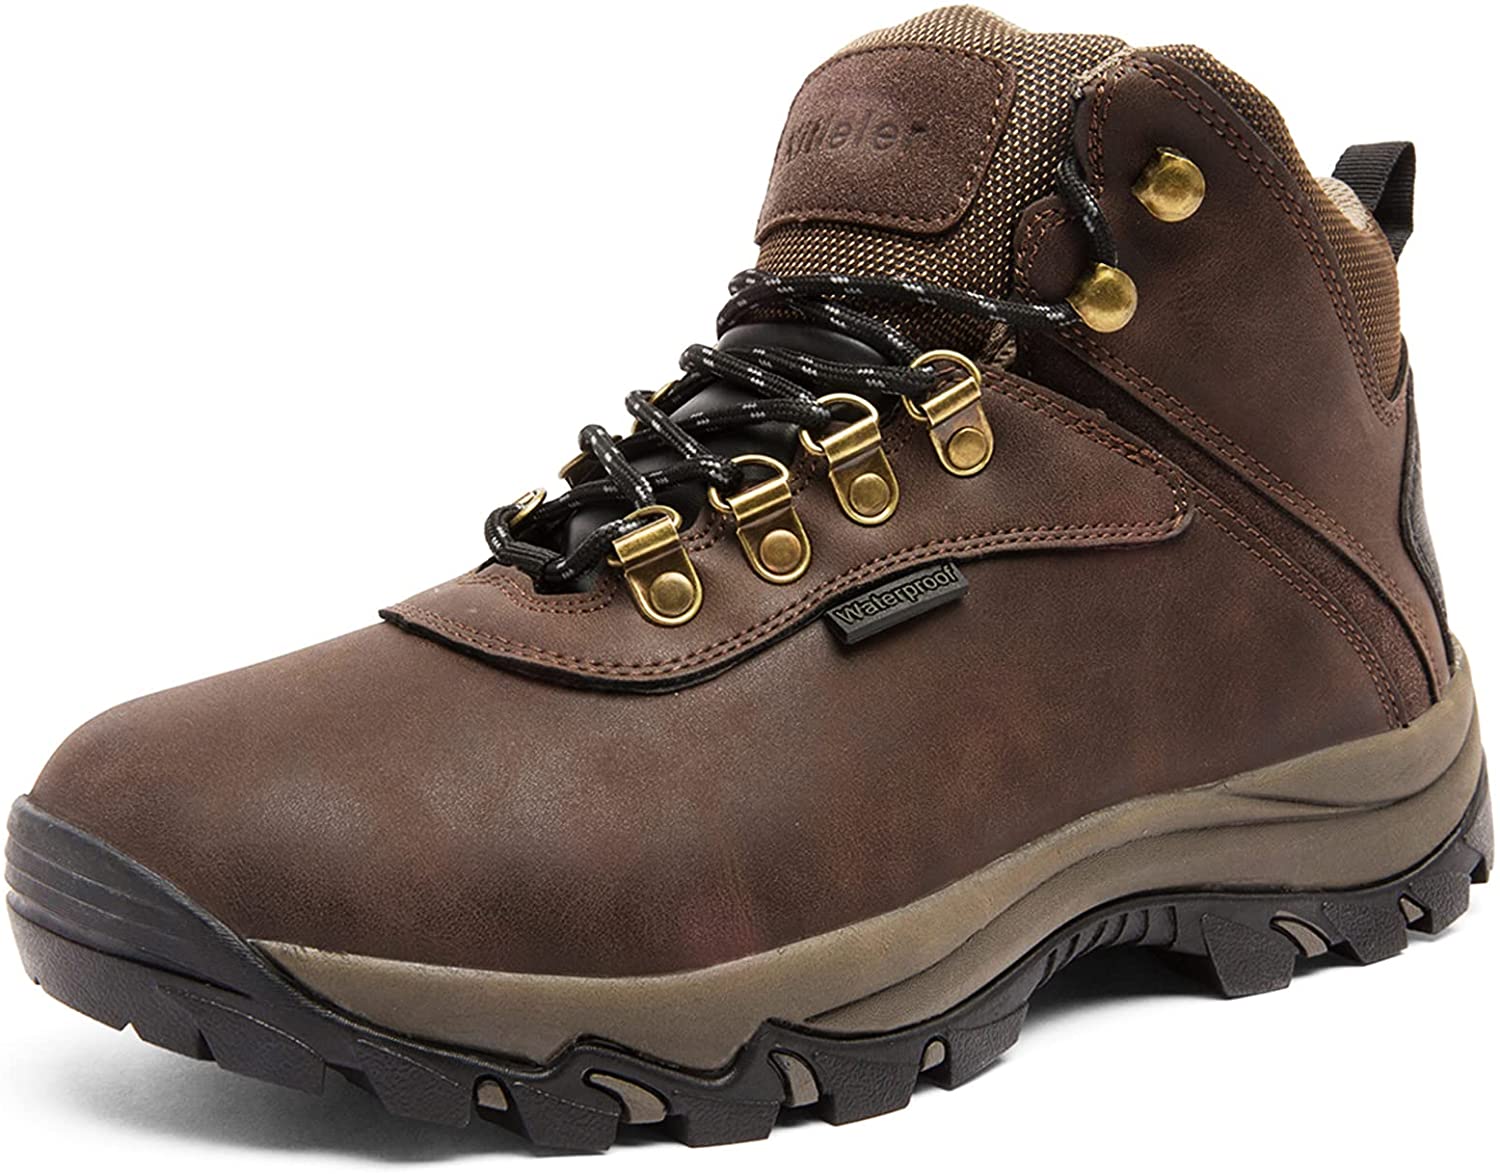 Mens Waterproof Hiking Boots Lightweight Outdoor Winter Boots Kitleler Size:7-13 